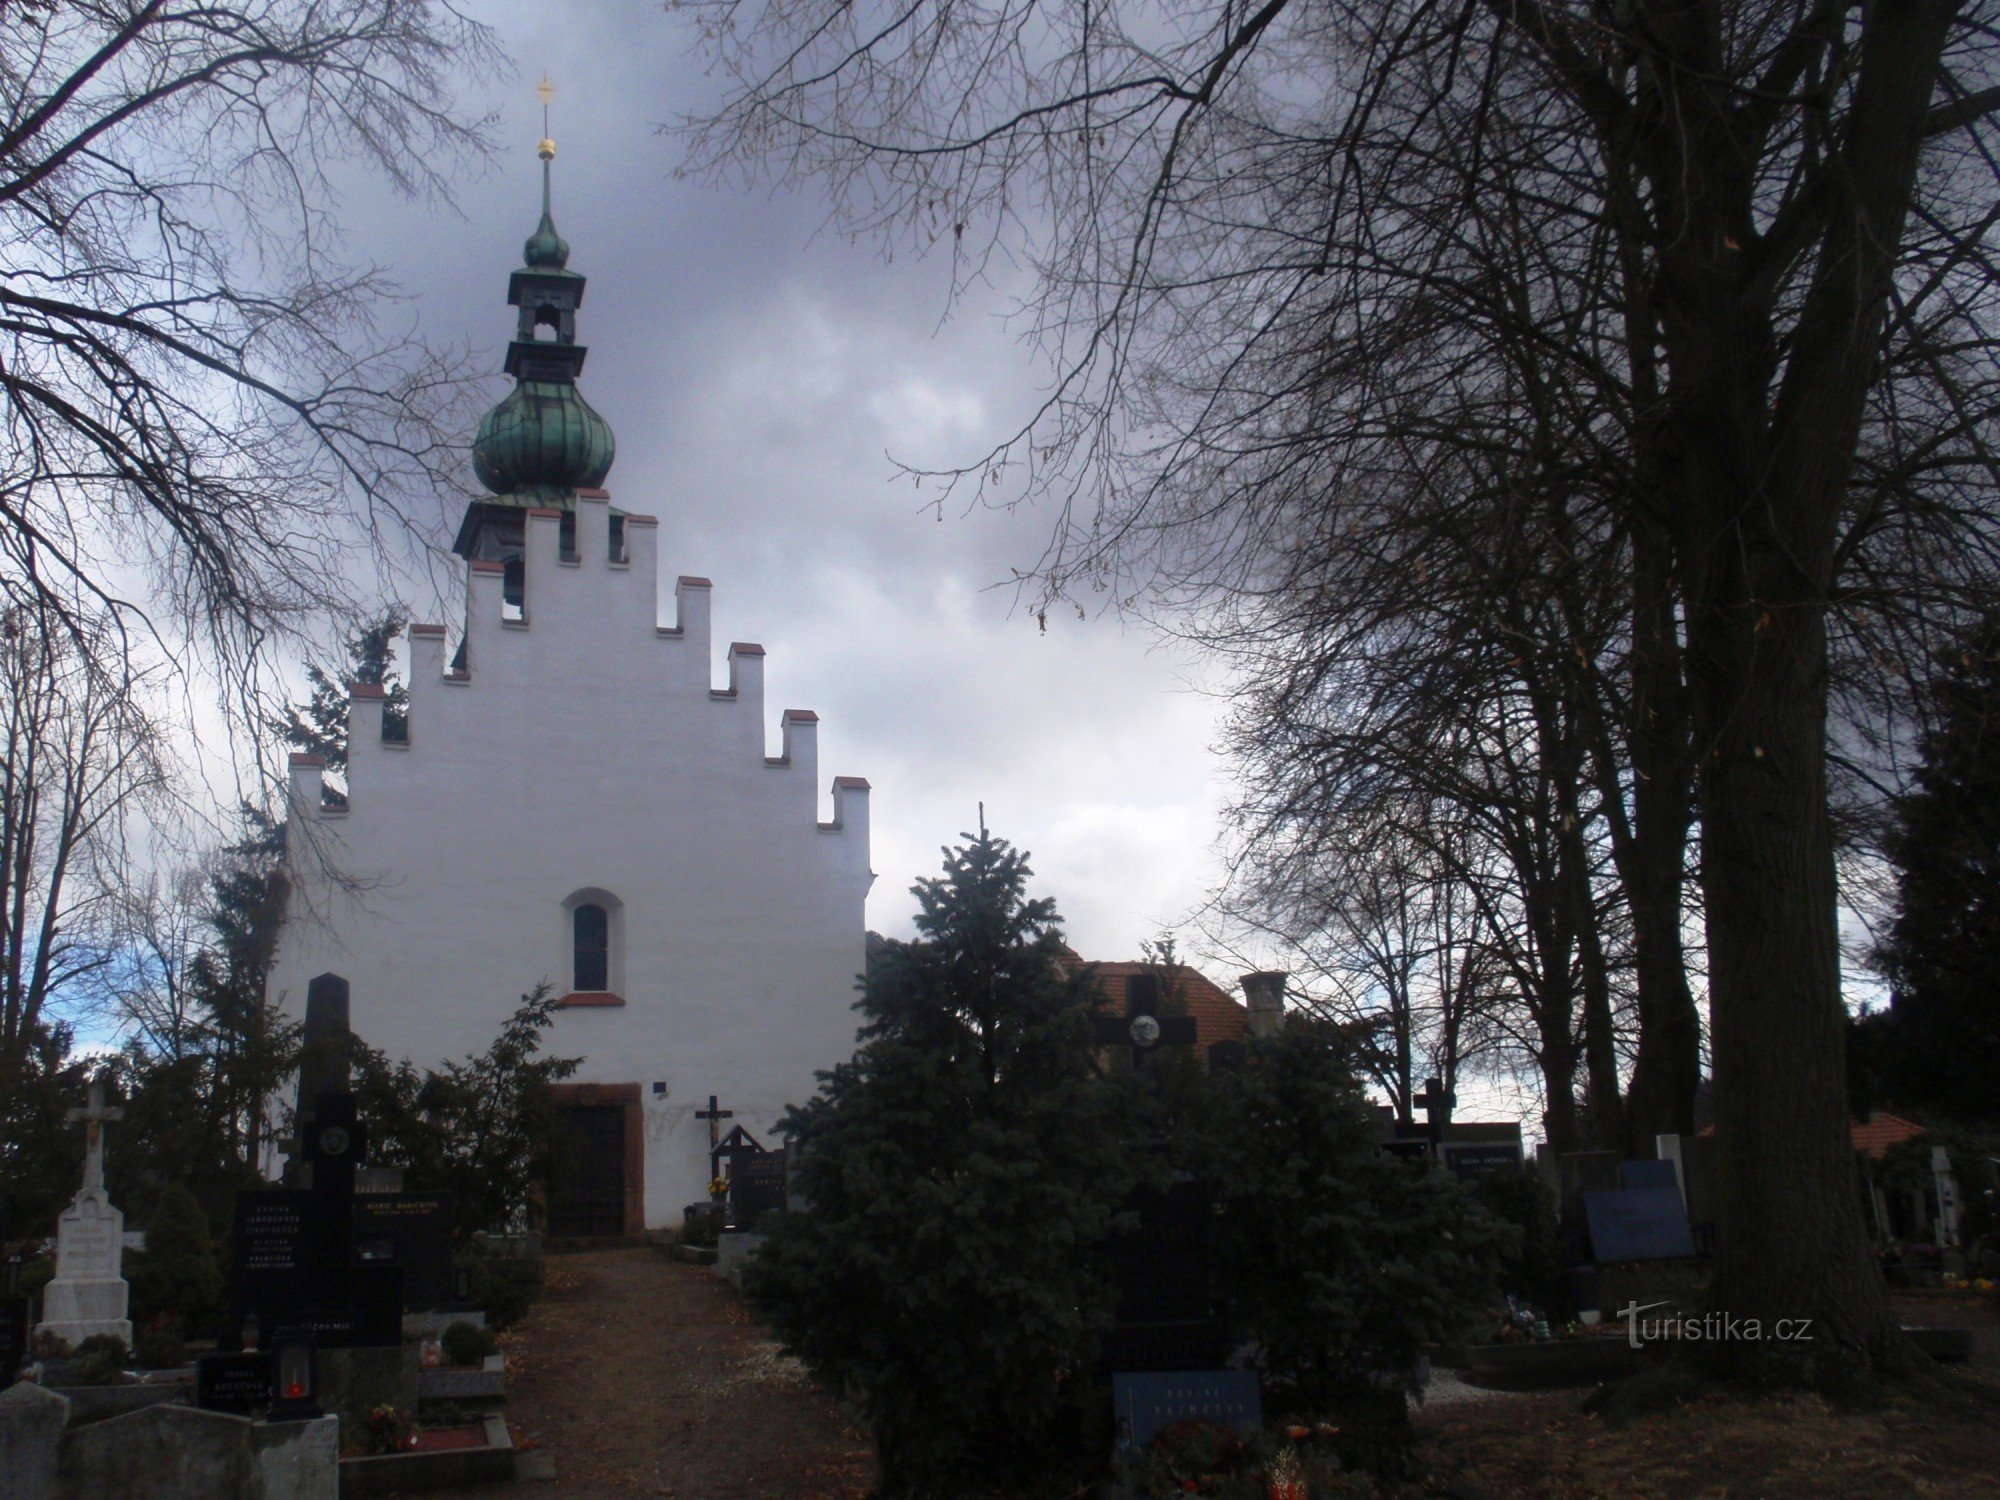 Předklášteří Szentháromság temetői temploma